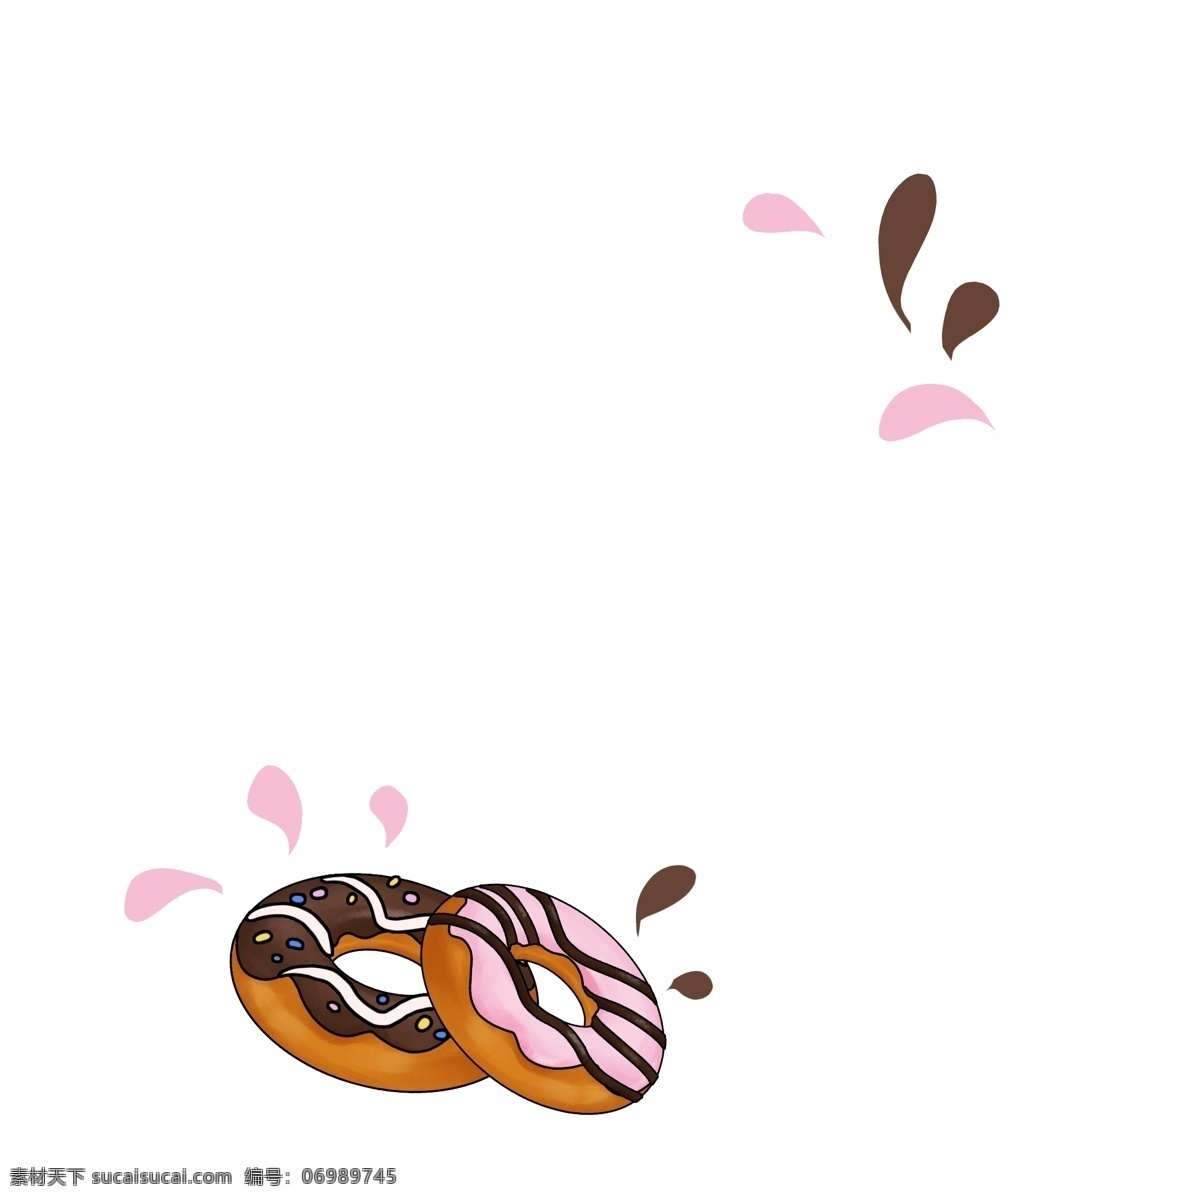 圆形 甜甜 圈 美食 相框 圆形相框 甜甜圈相框 美食相框 插图 插画 两个 巧克力甜甜圈